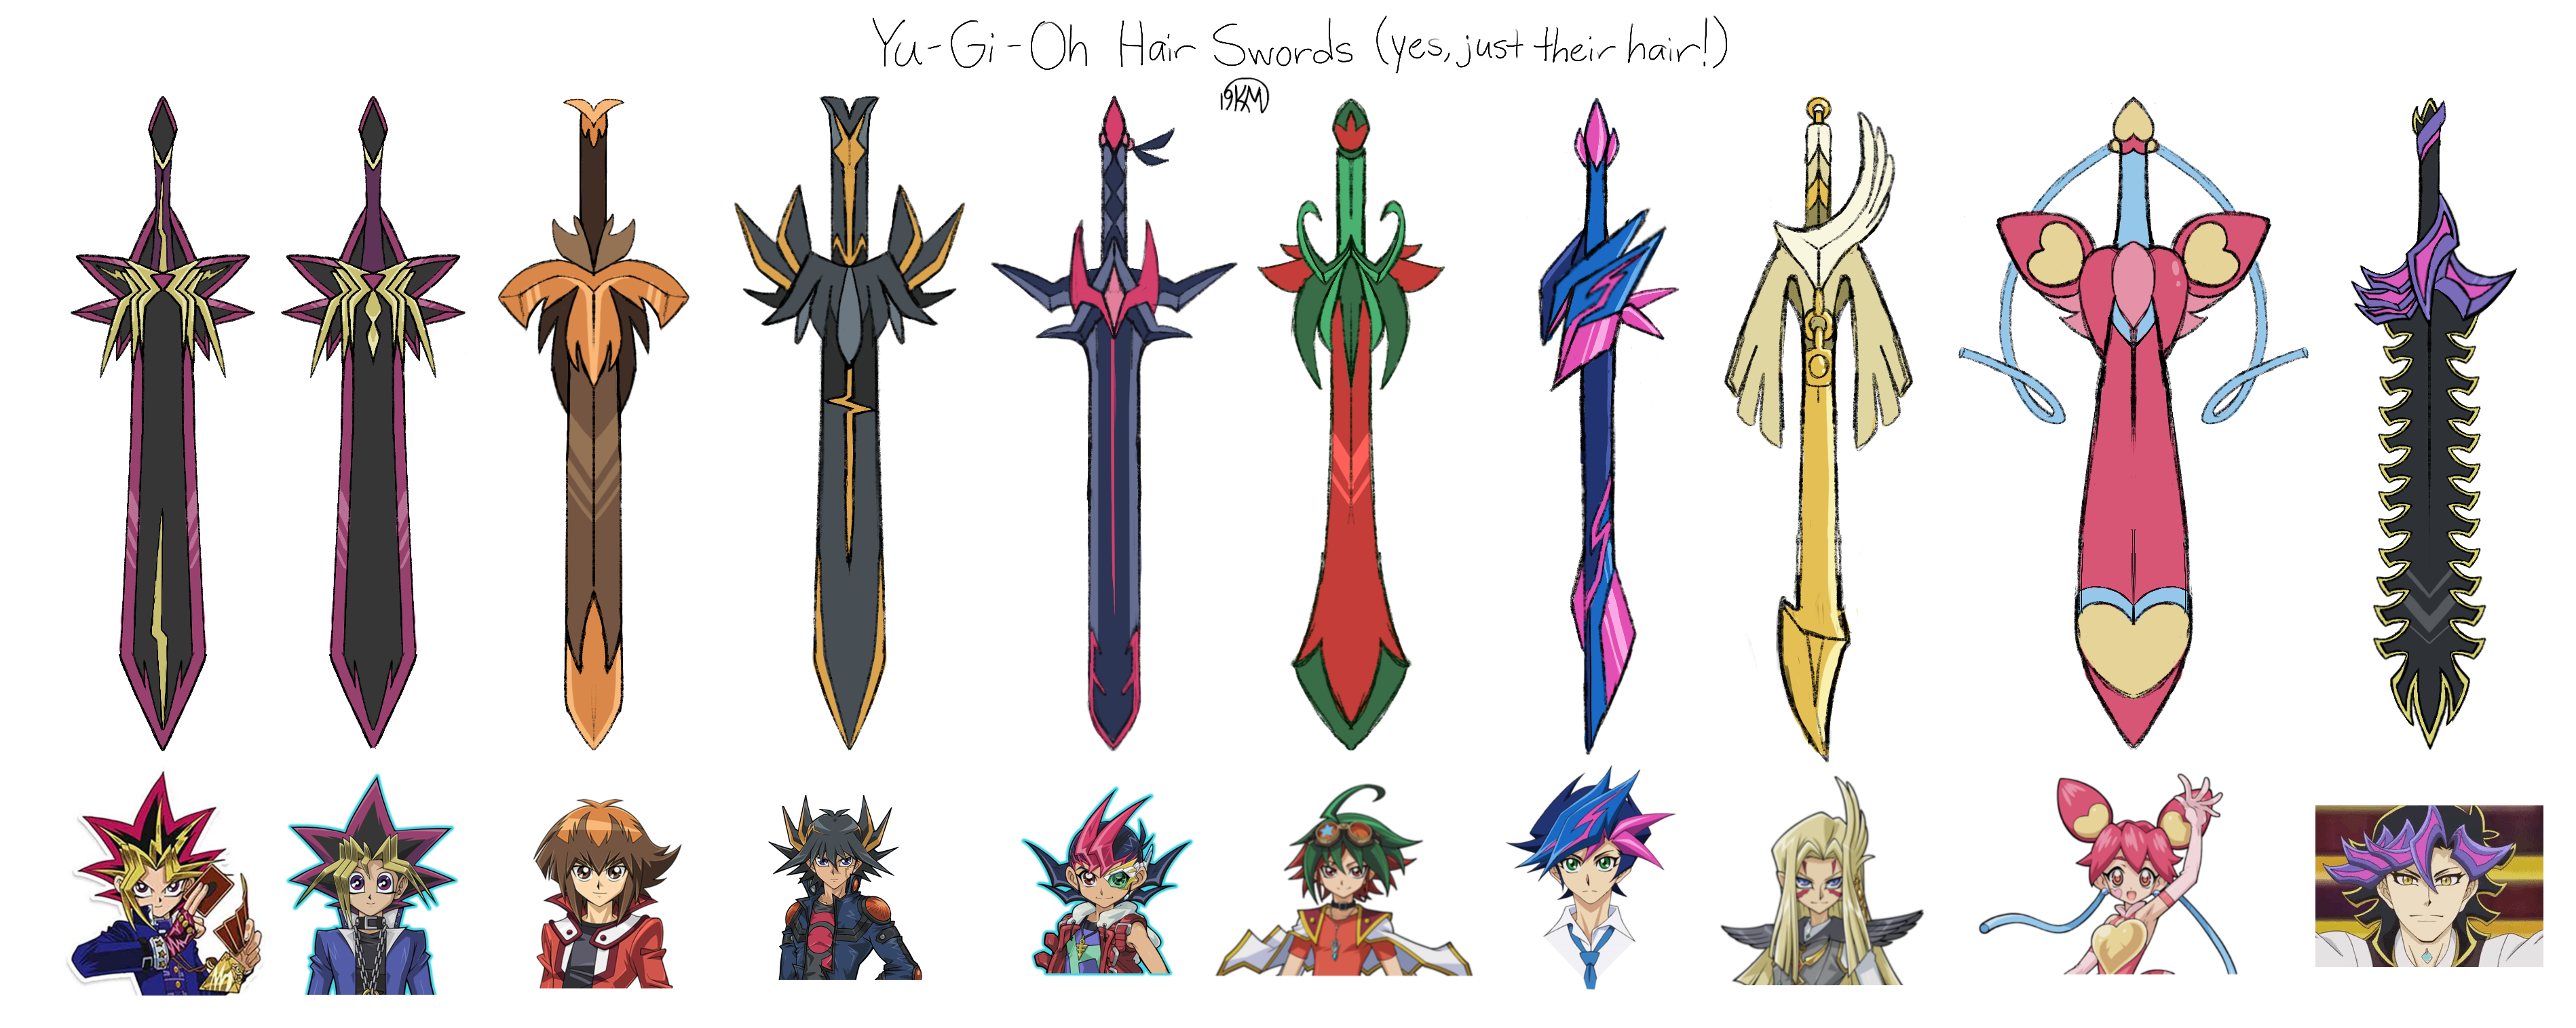 Yu-Gi-Oh Hair Swords. 